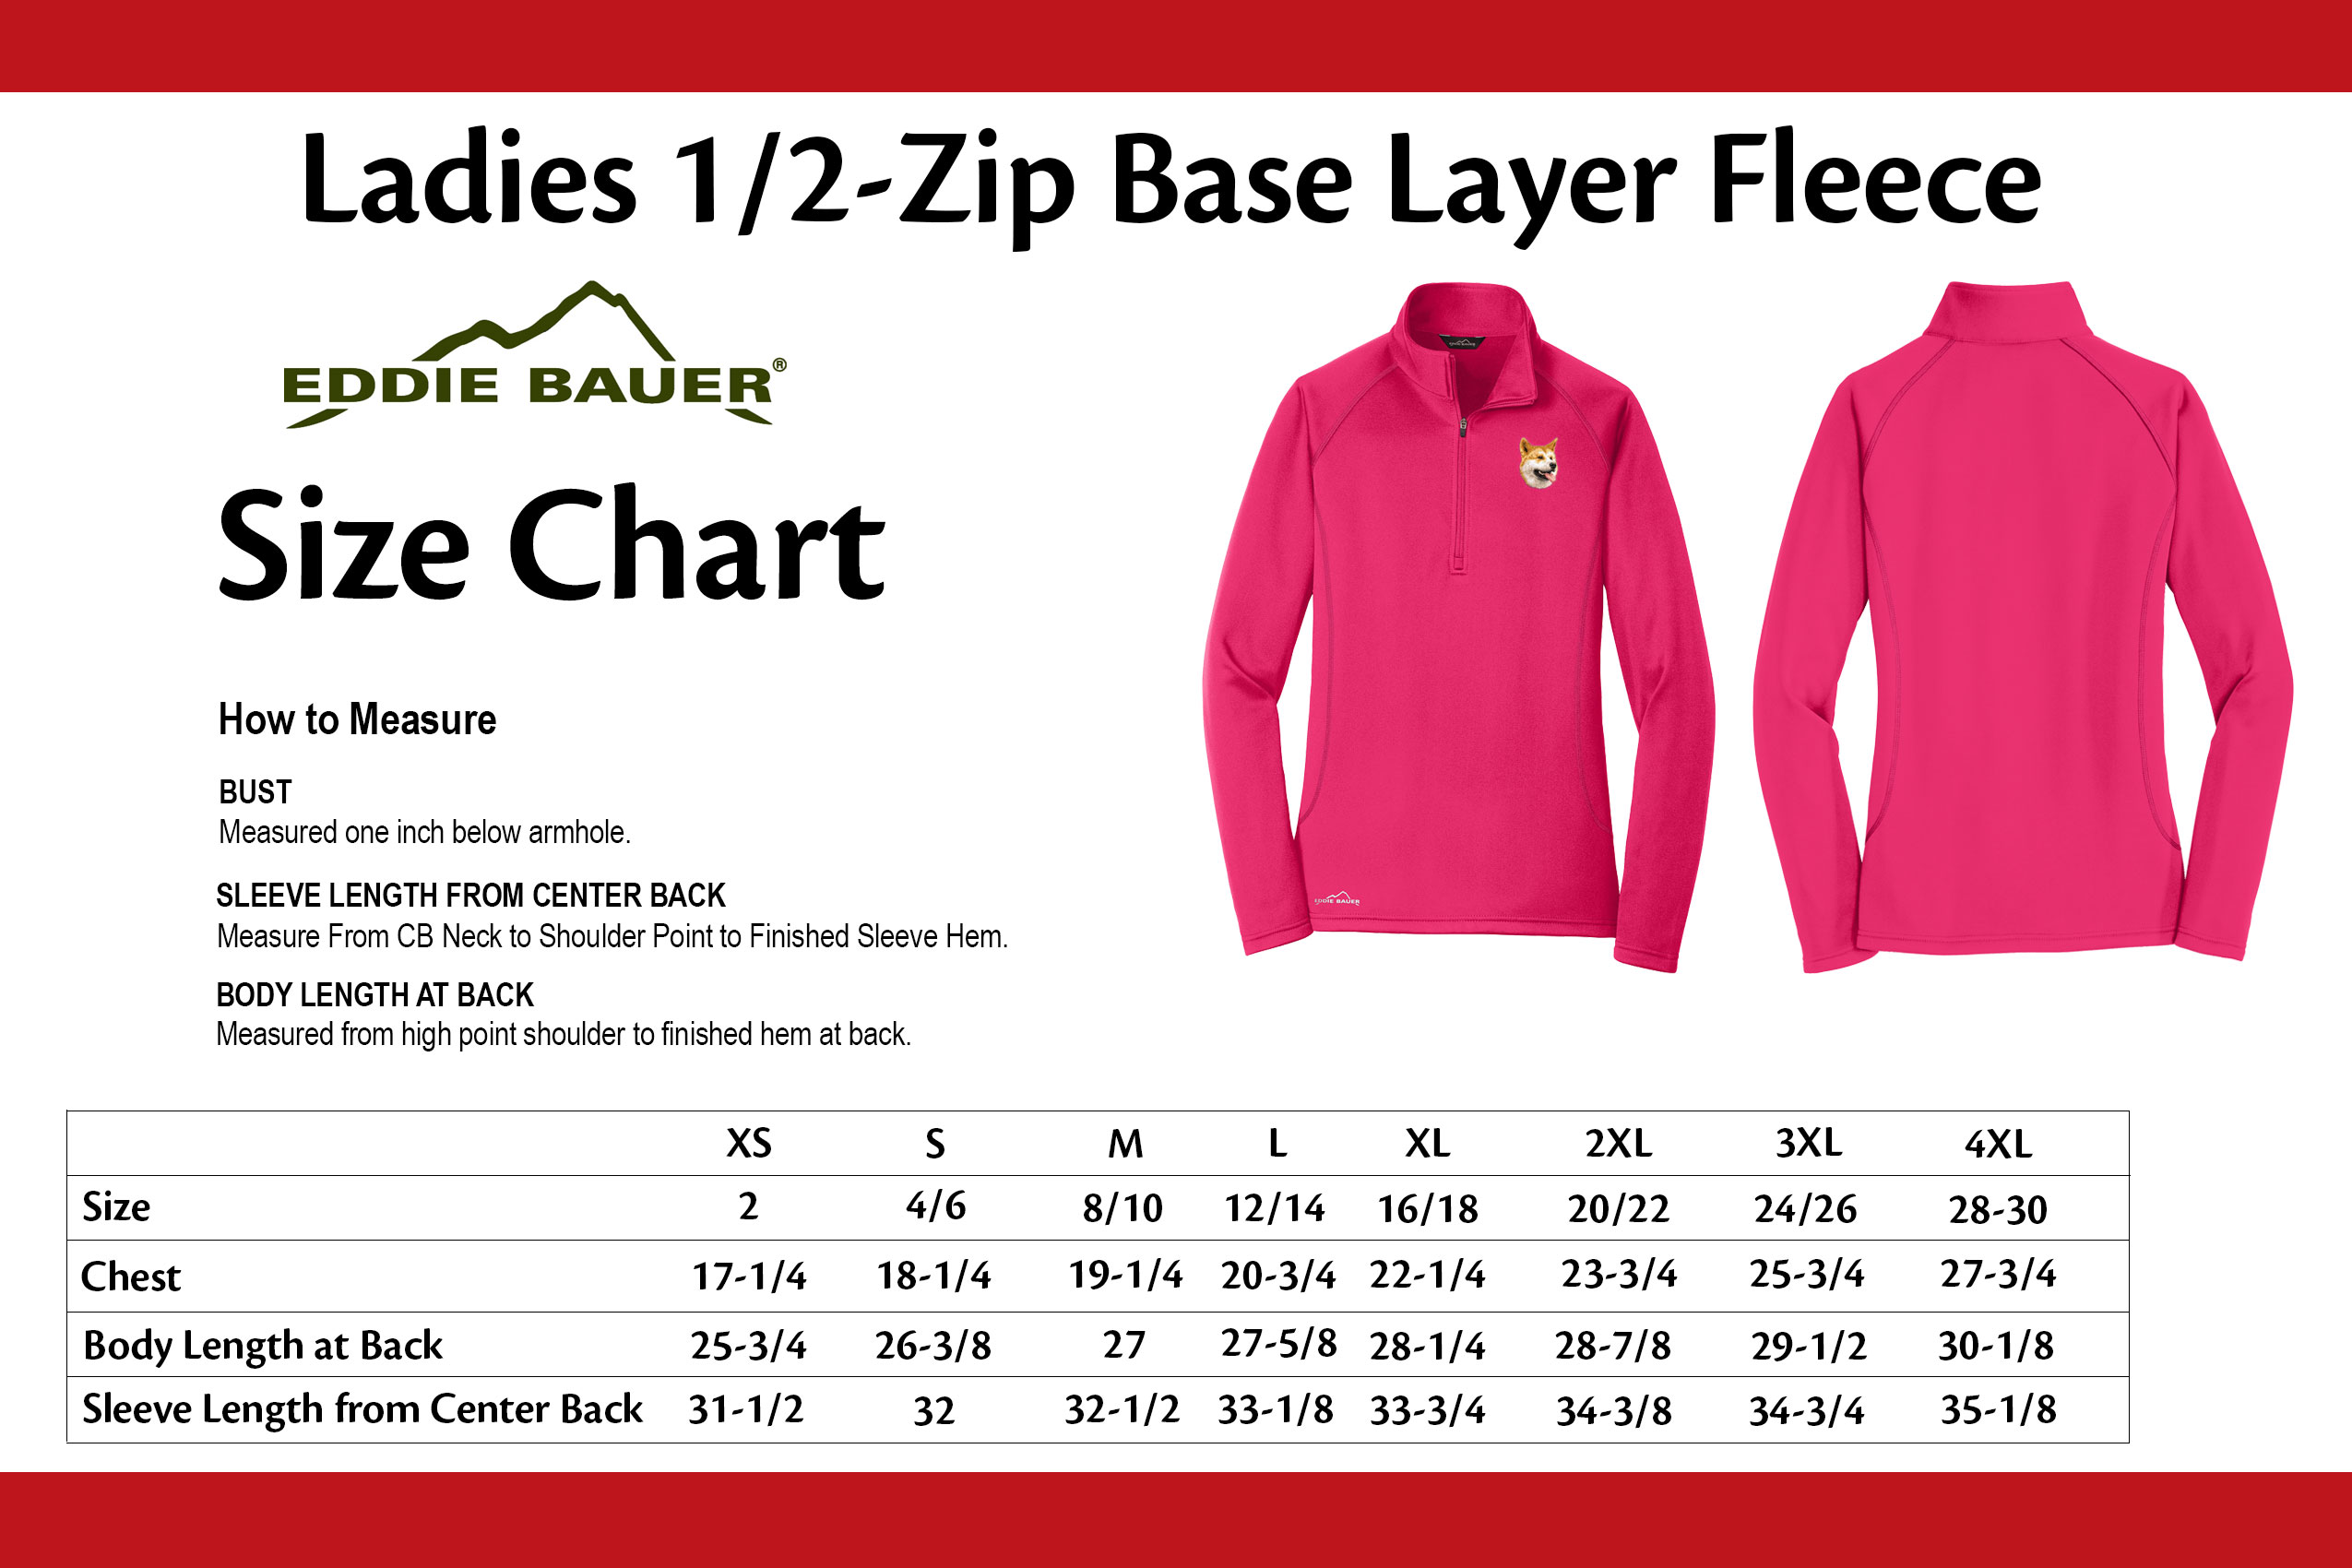 Eddie Bauer Size Chart